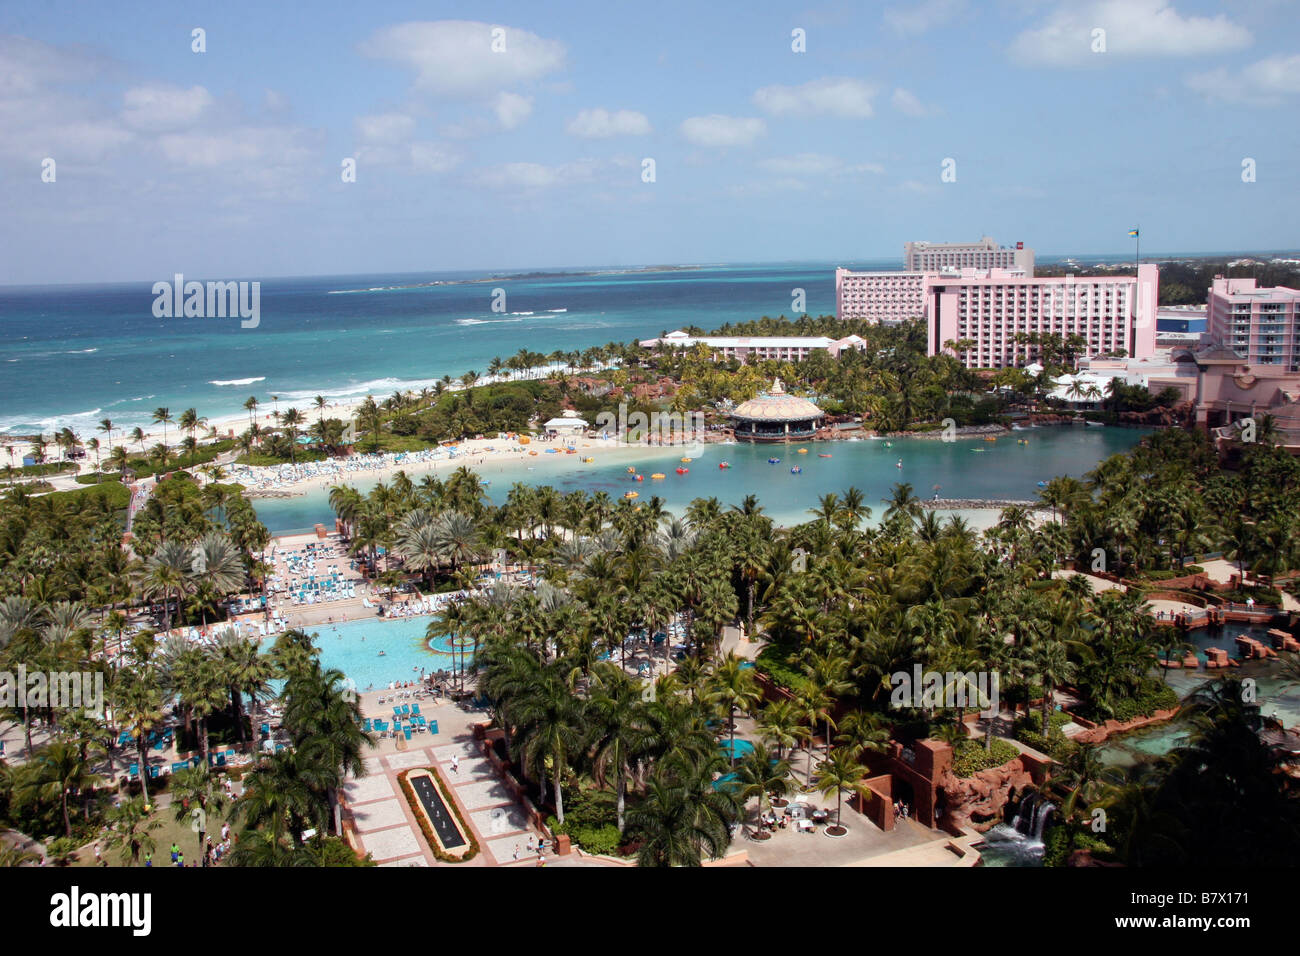 La vista di Atlantide alto hotel room, over water park, vasche di pesci, la spiaggia e il turista in vacanza al sole. Foto Stock